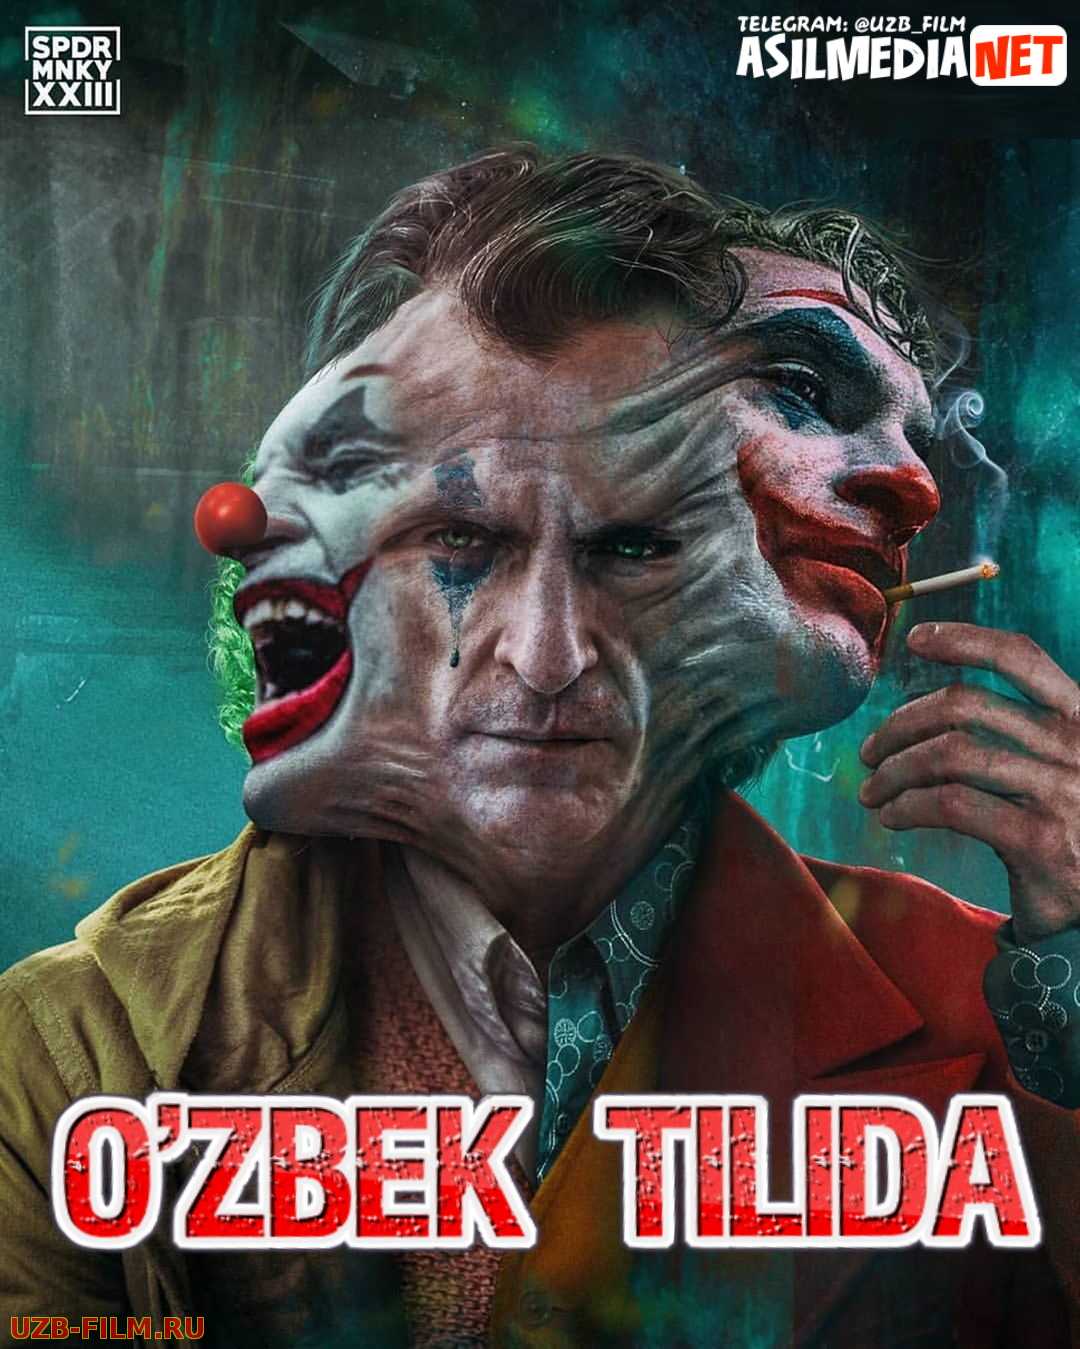 Joker Horij kino (Uzbek tilida HD 2019)